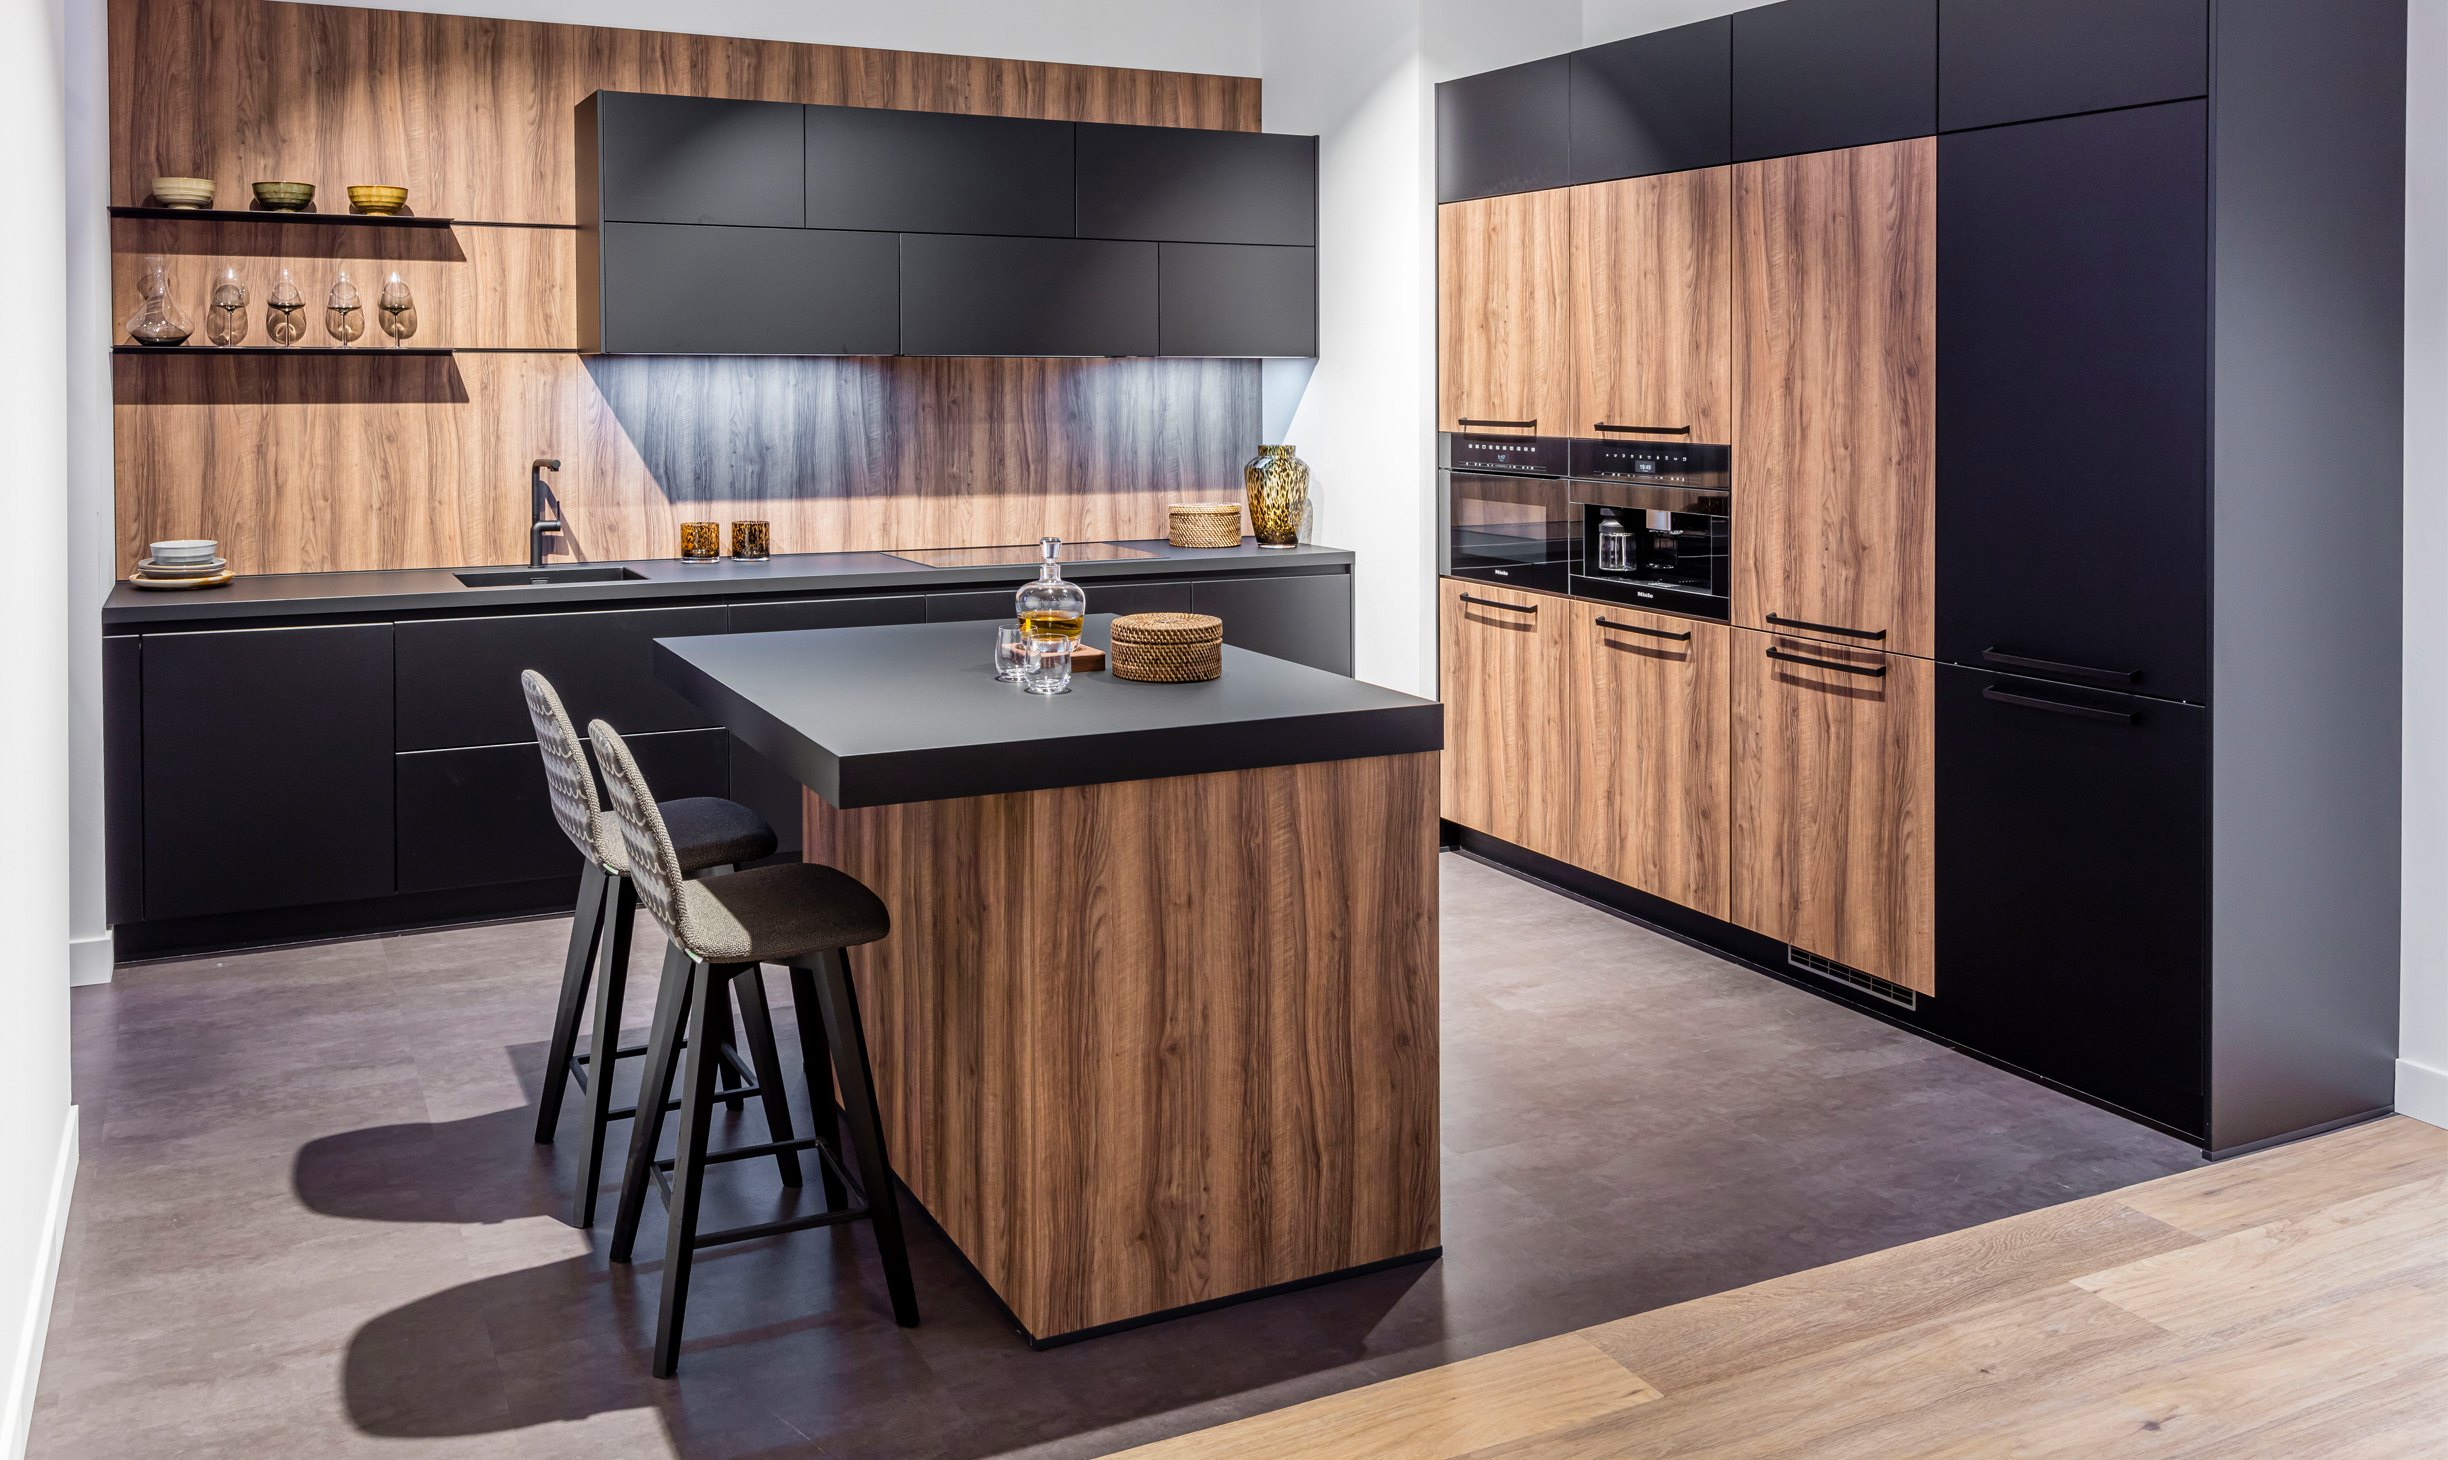 overschrijving onwettig Intact Zwarte keuken: mat zwart of met hout | Bemmel & Kroon